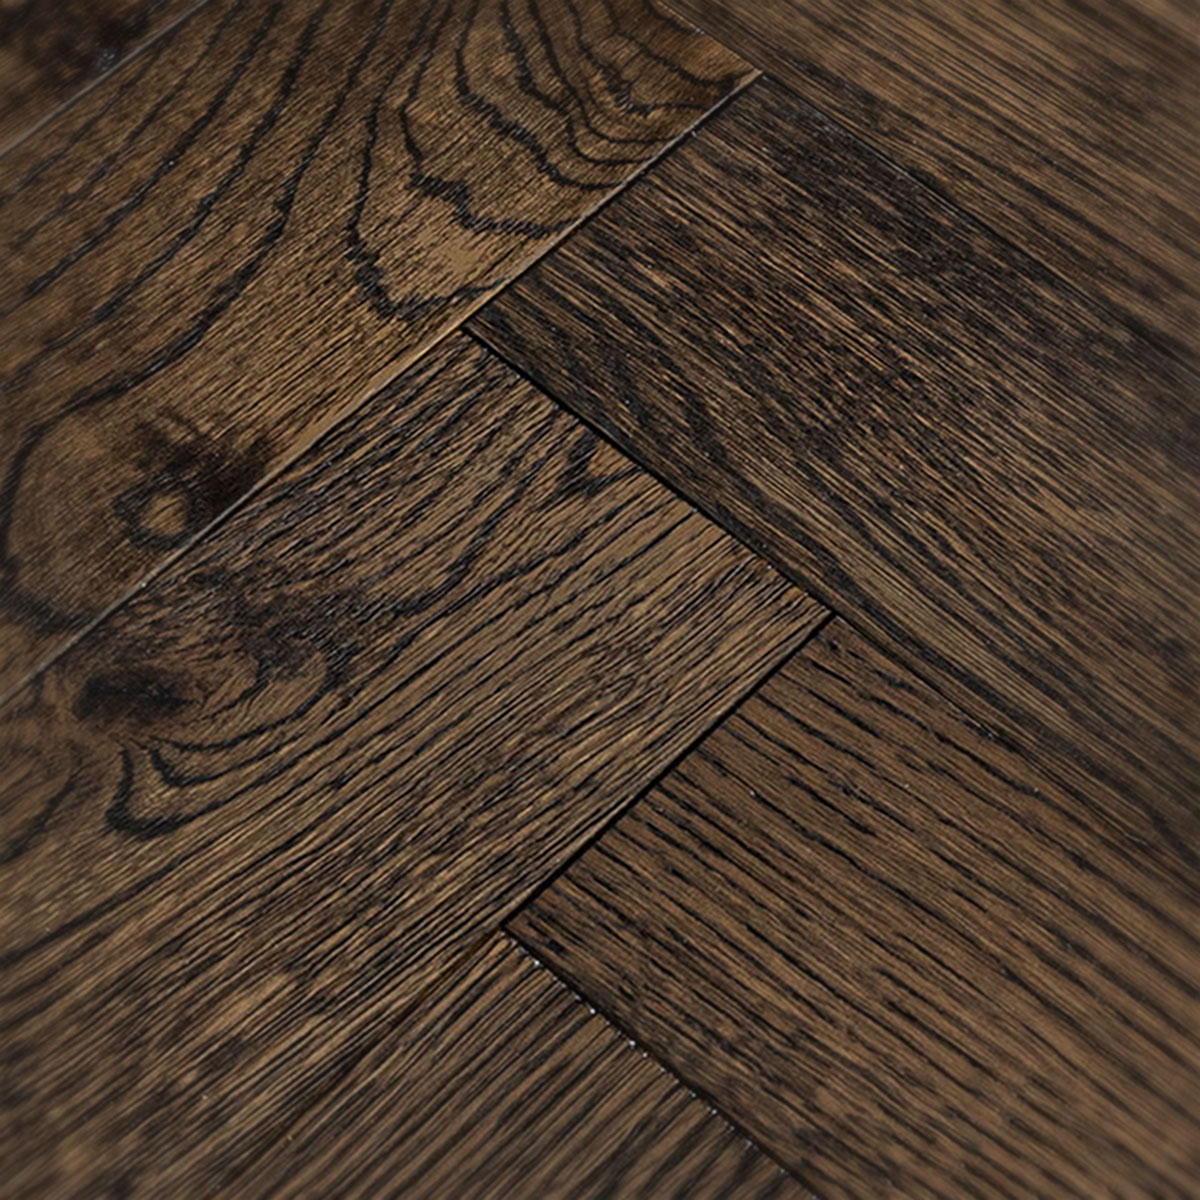 Hockley Croft - Chocolate Herringbone Engineered Oak Floor